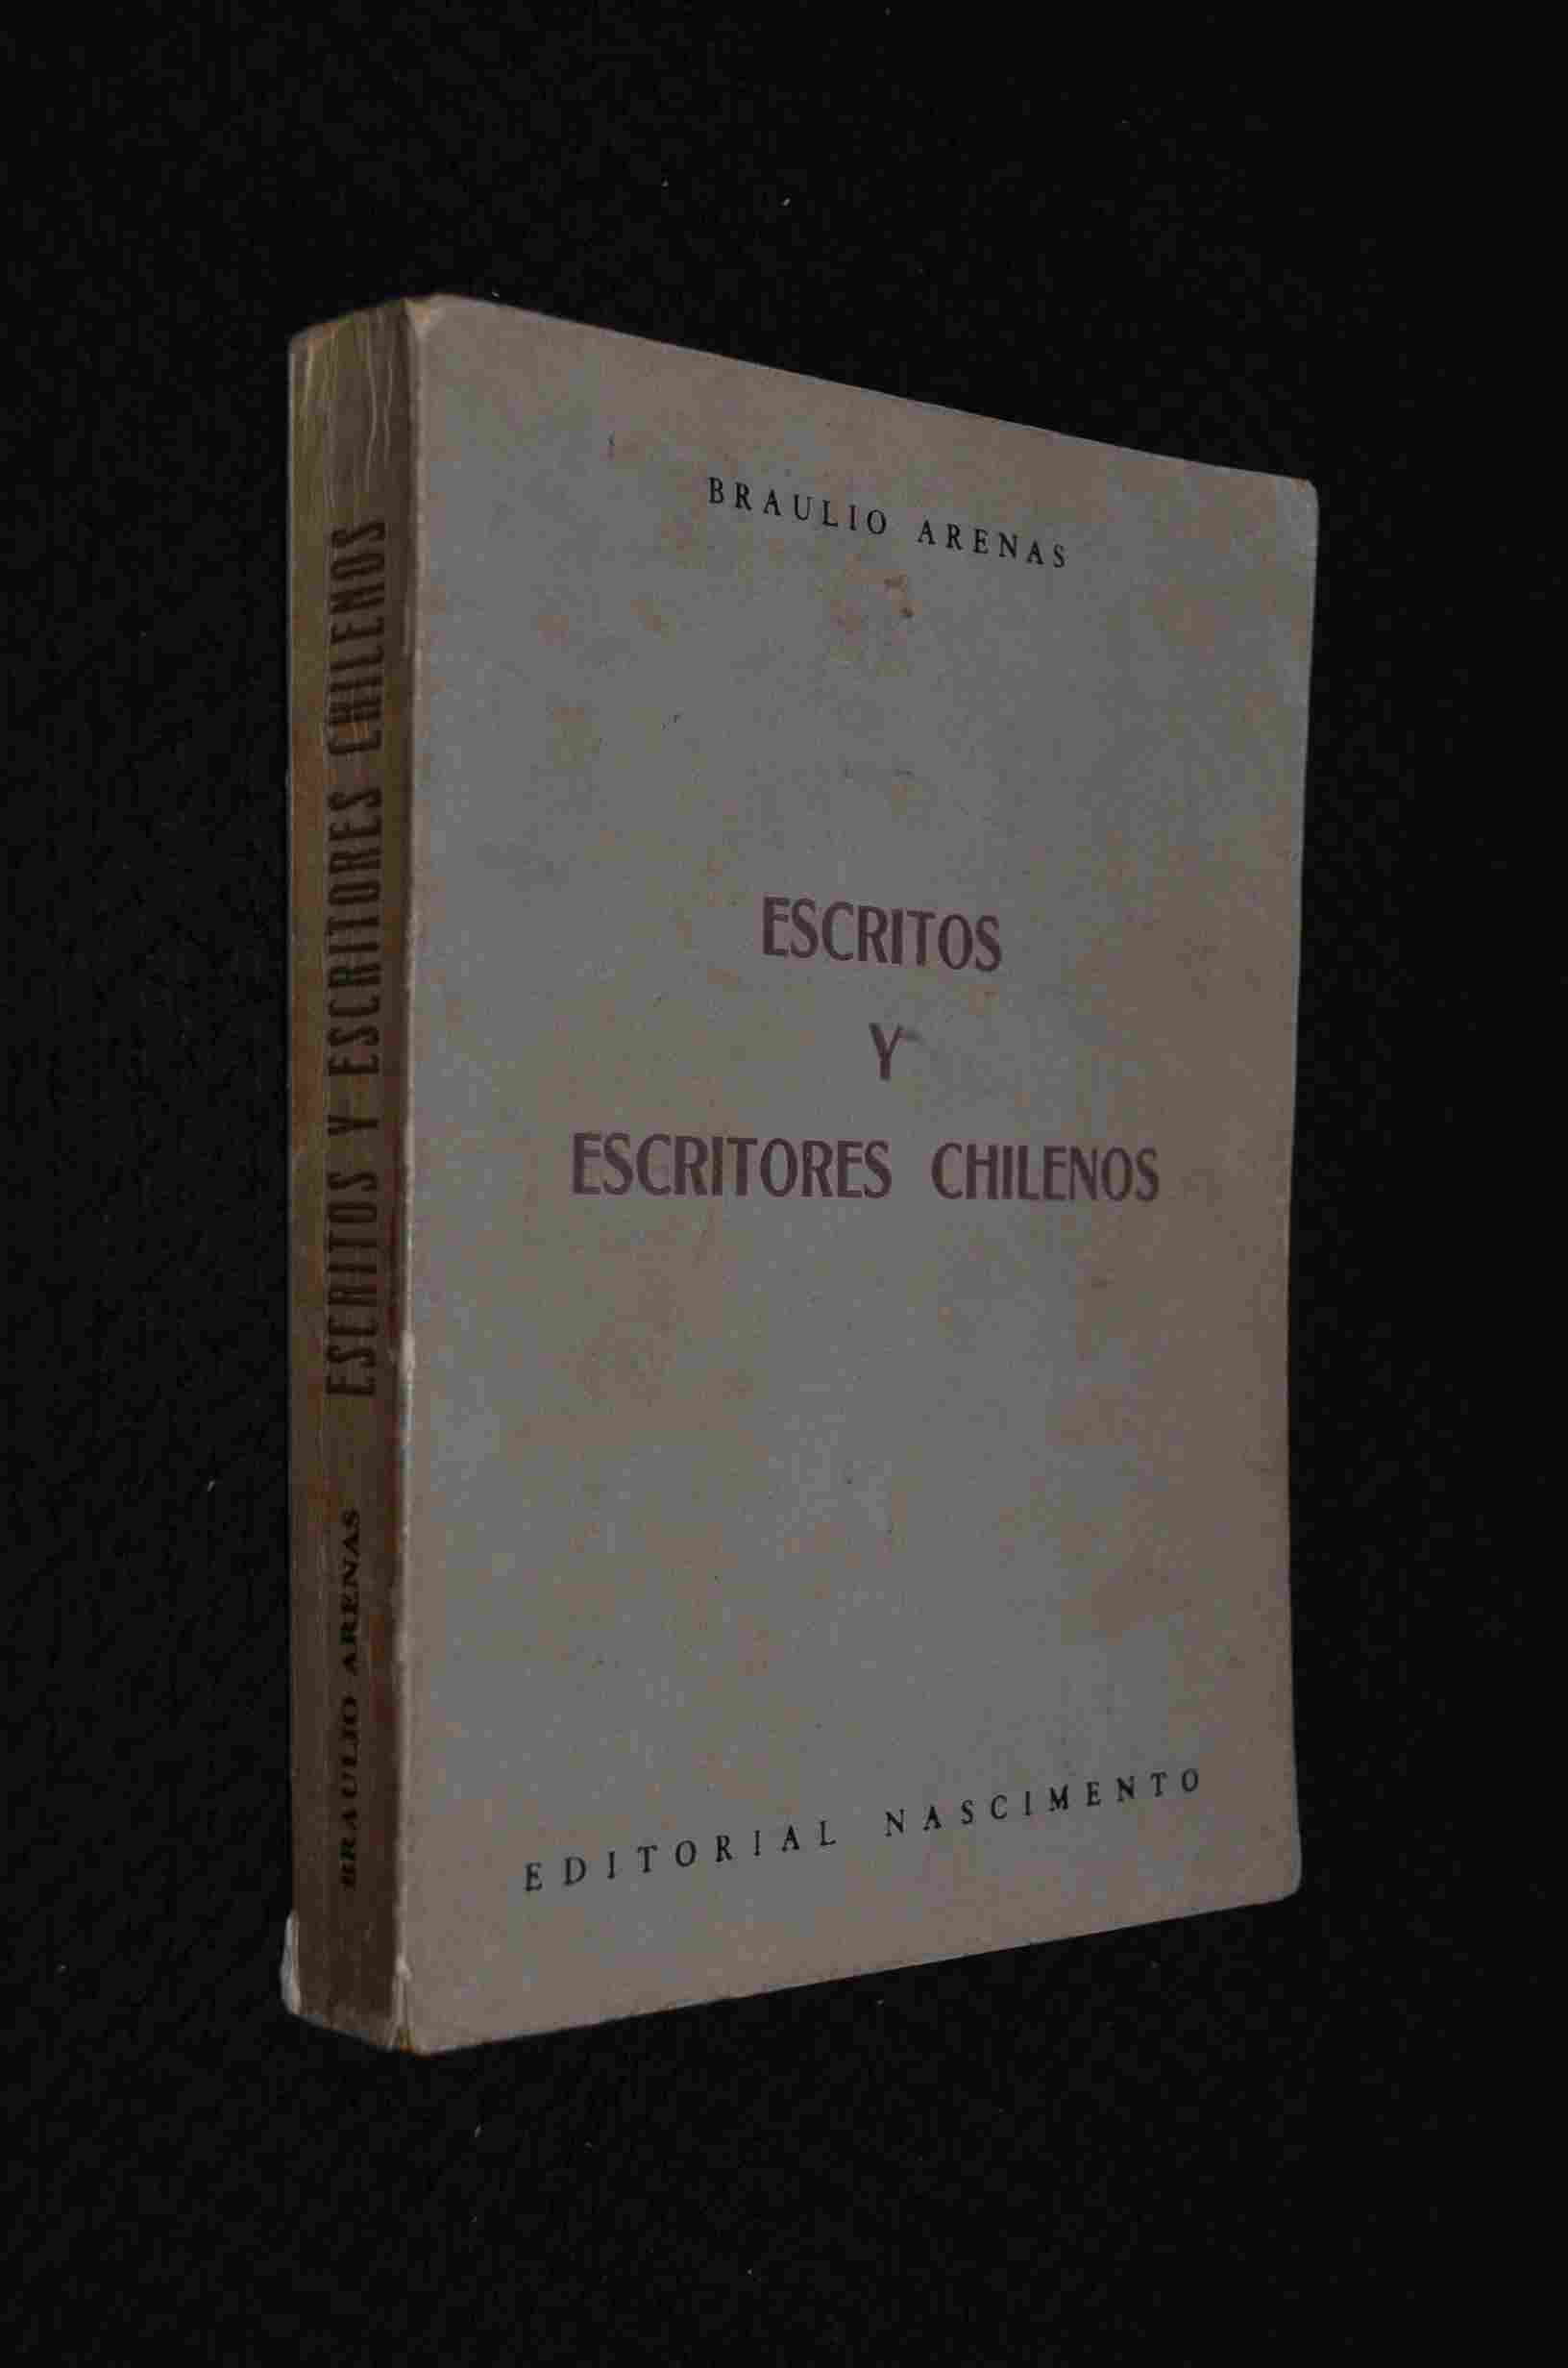 Braulio Arenas - Escritos y Escritores Chilenos